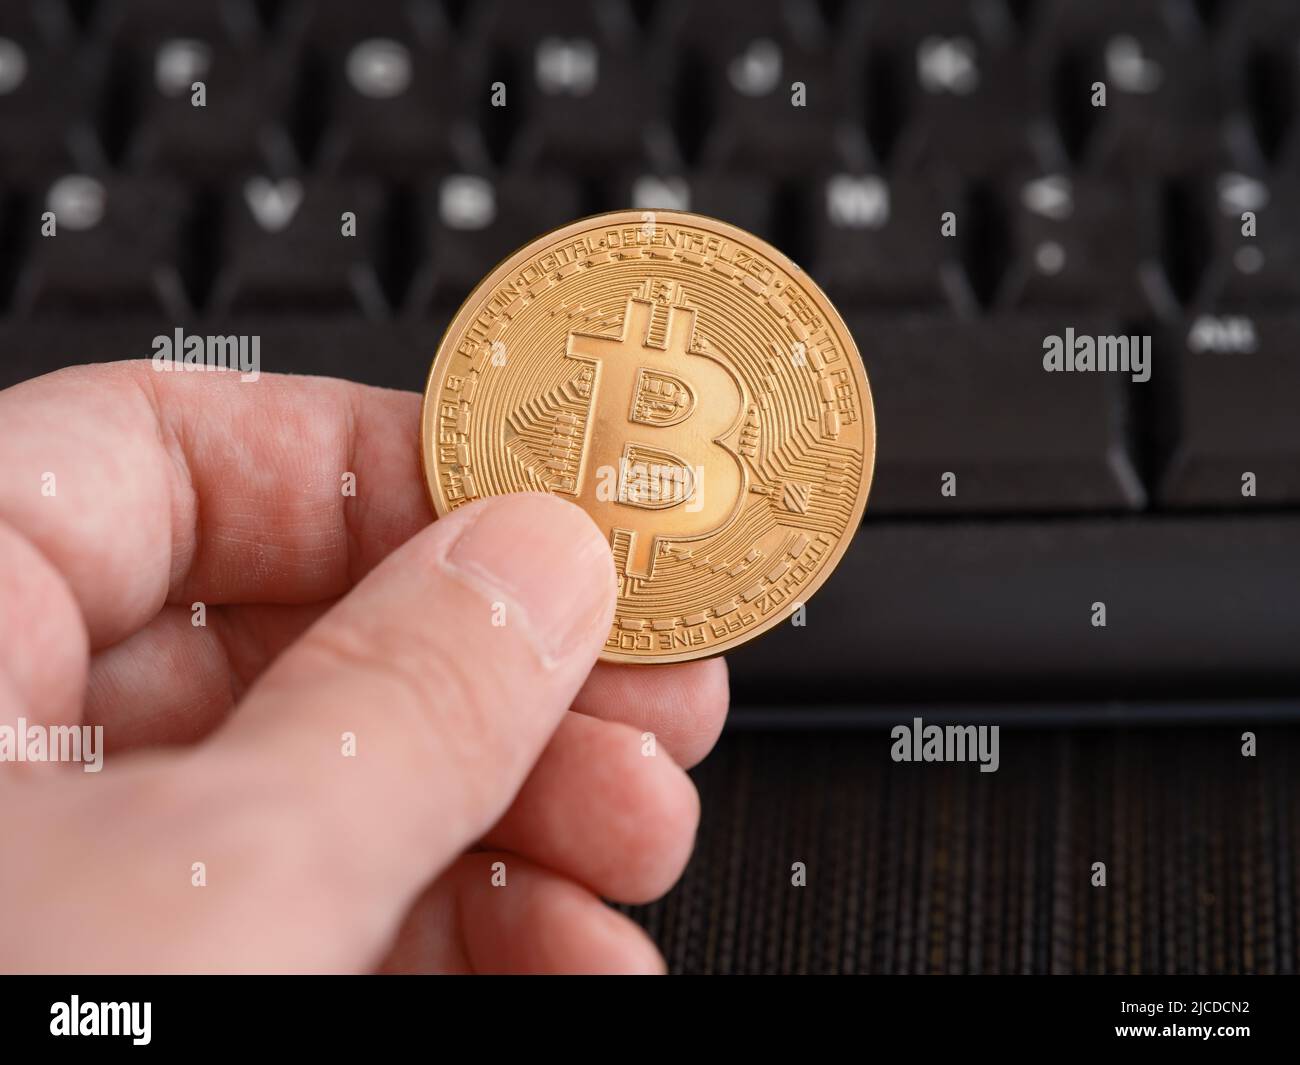 Un hombre sosteniendo una moneda de bitcoin dorada en su mano contra un teclado de ordenador. Primer plano. Foto de stock